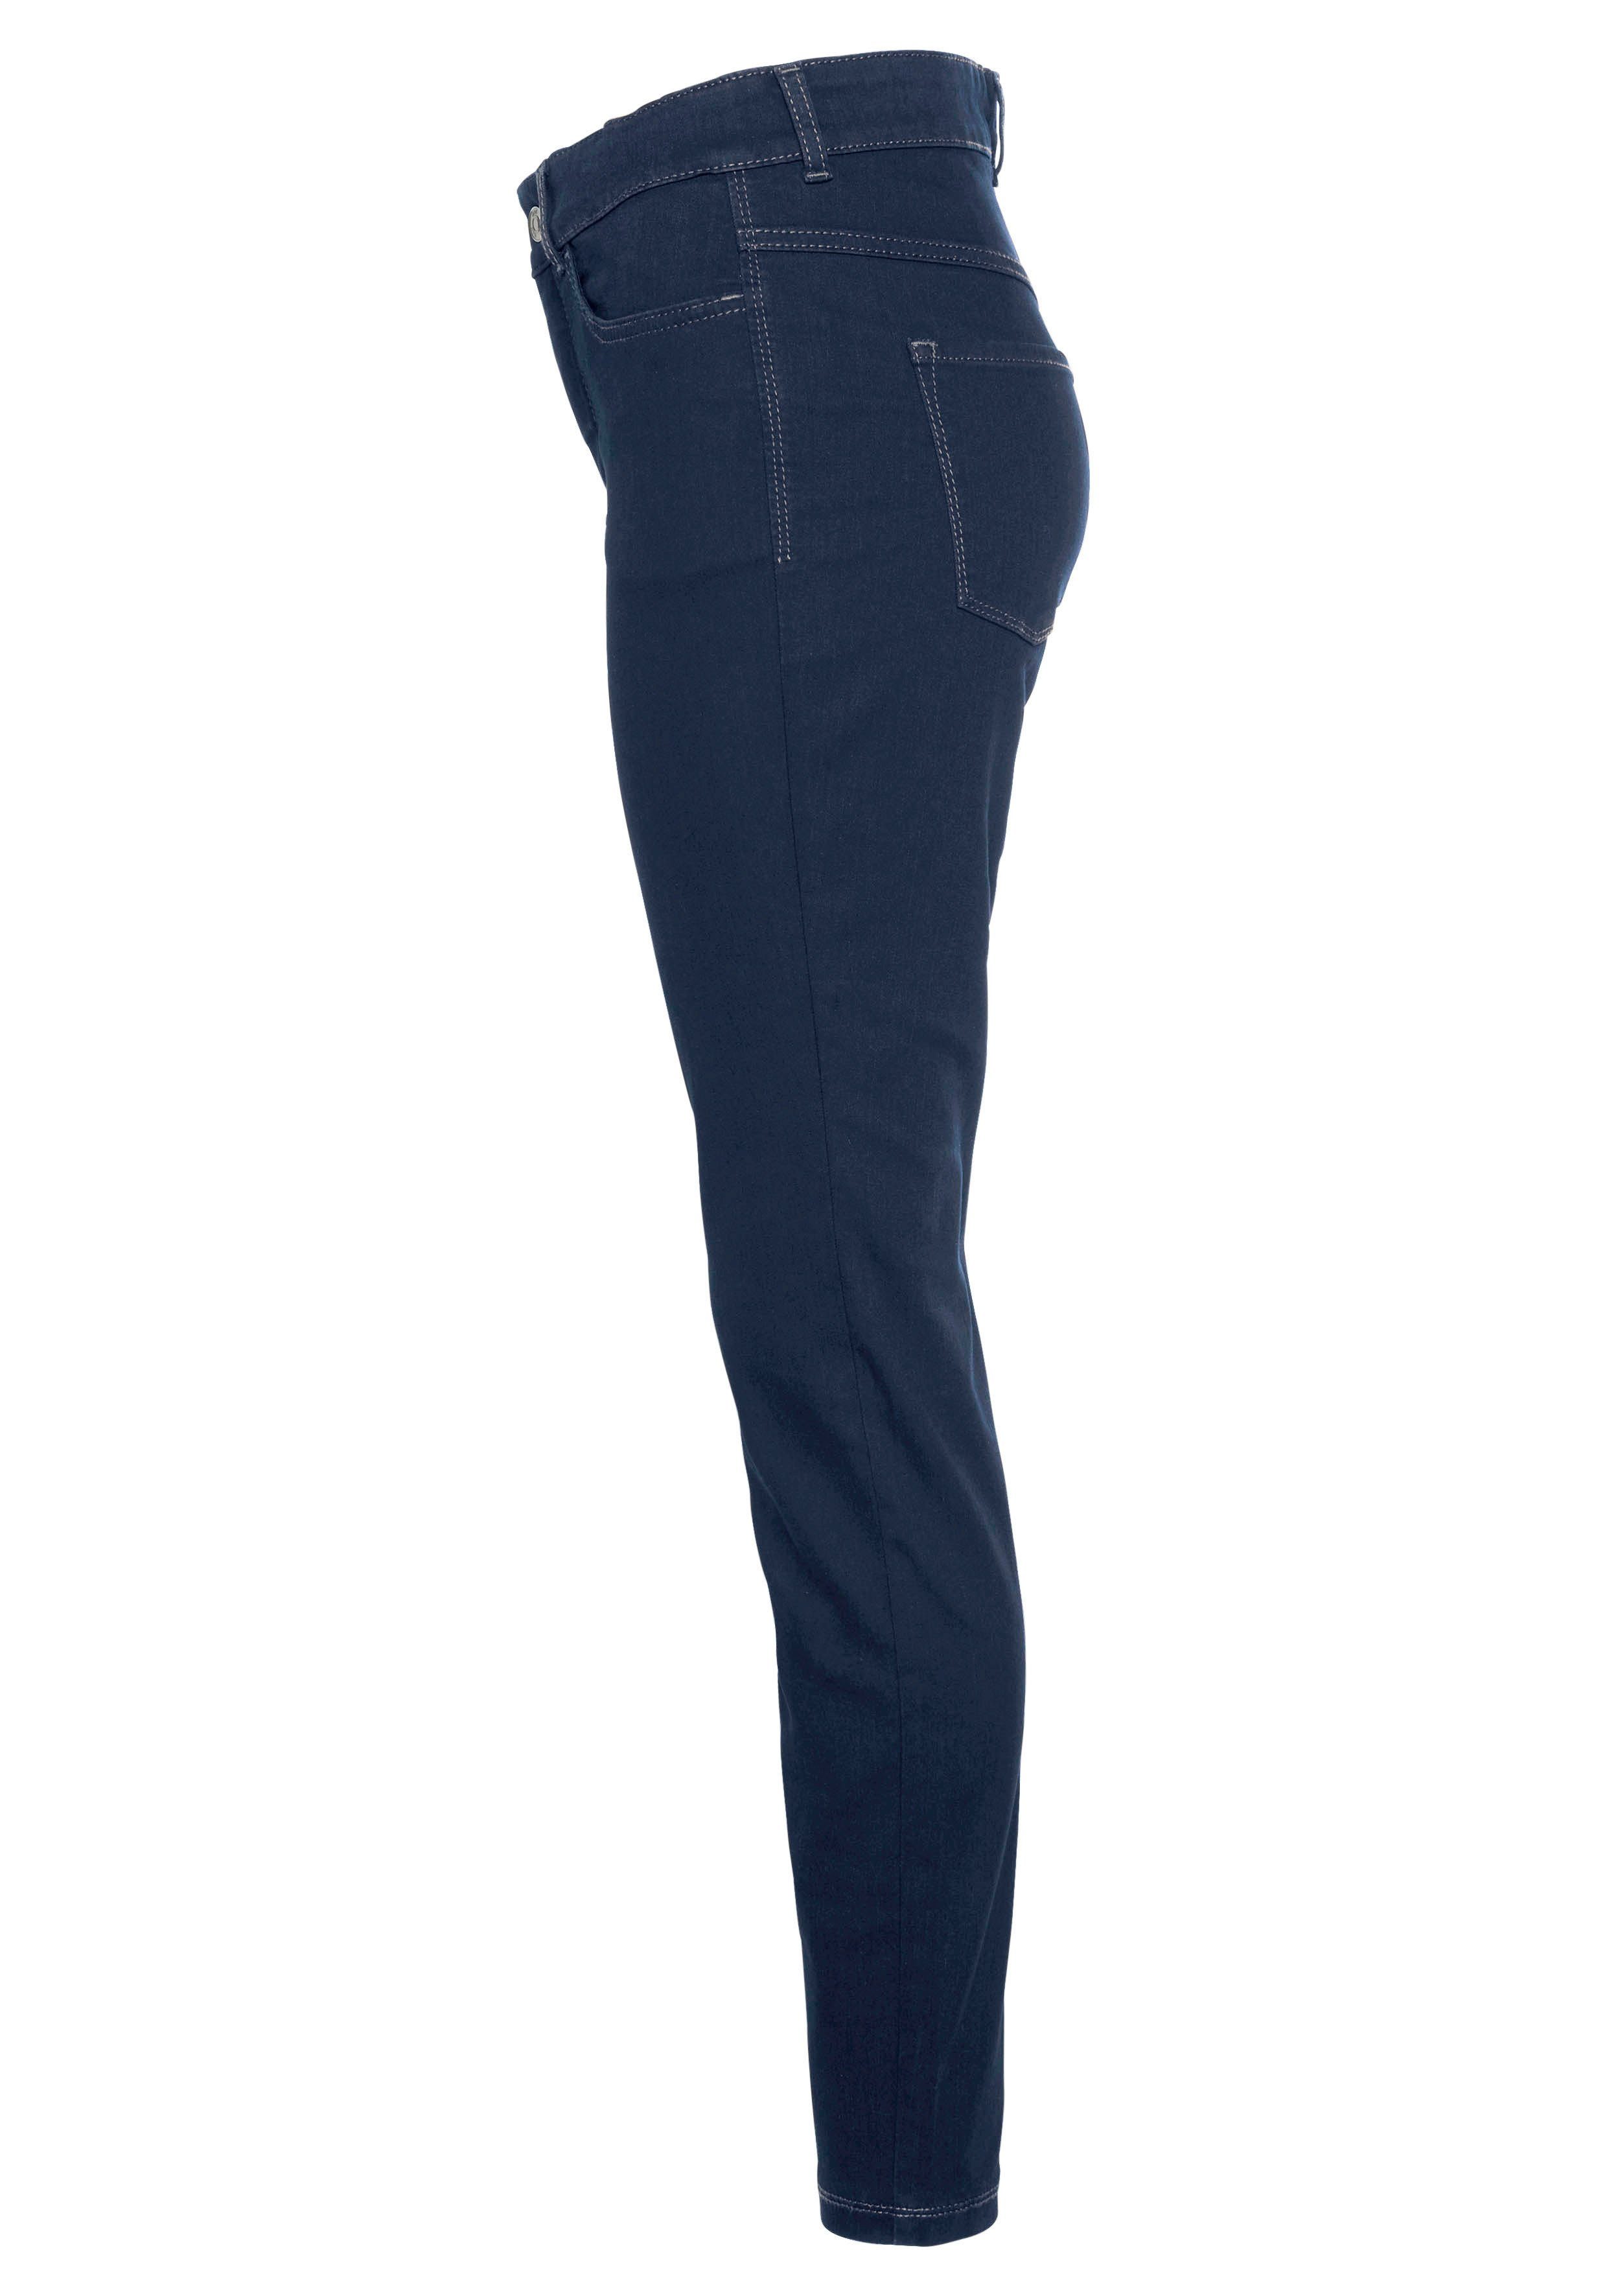 Power-Stretch Tag Qualität sitzt den wash Hiperstretch-Skinny MAC blue dark new basic ganzen Skinny-fit-Jeans bequem